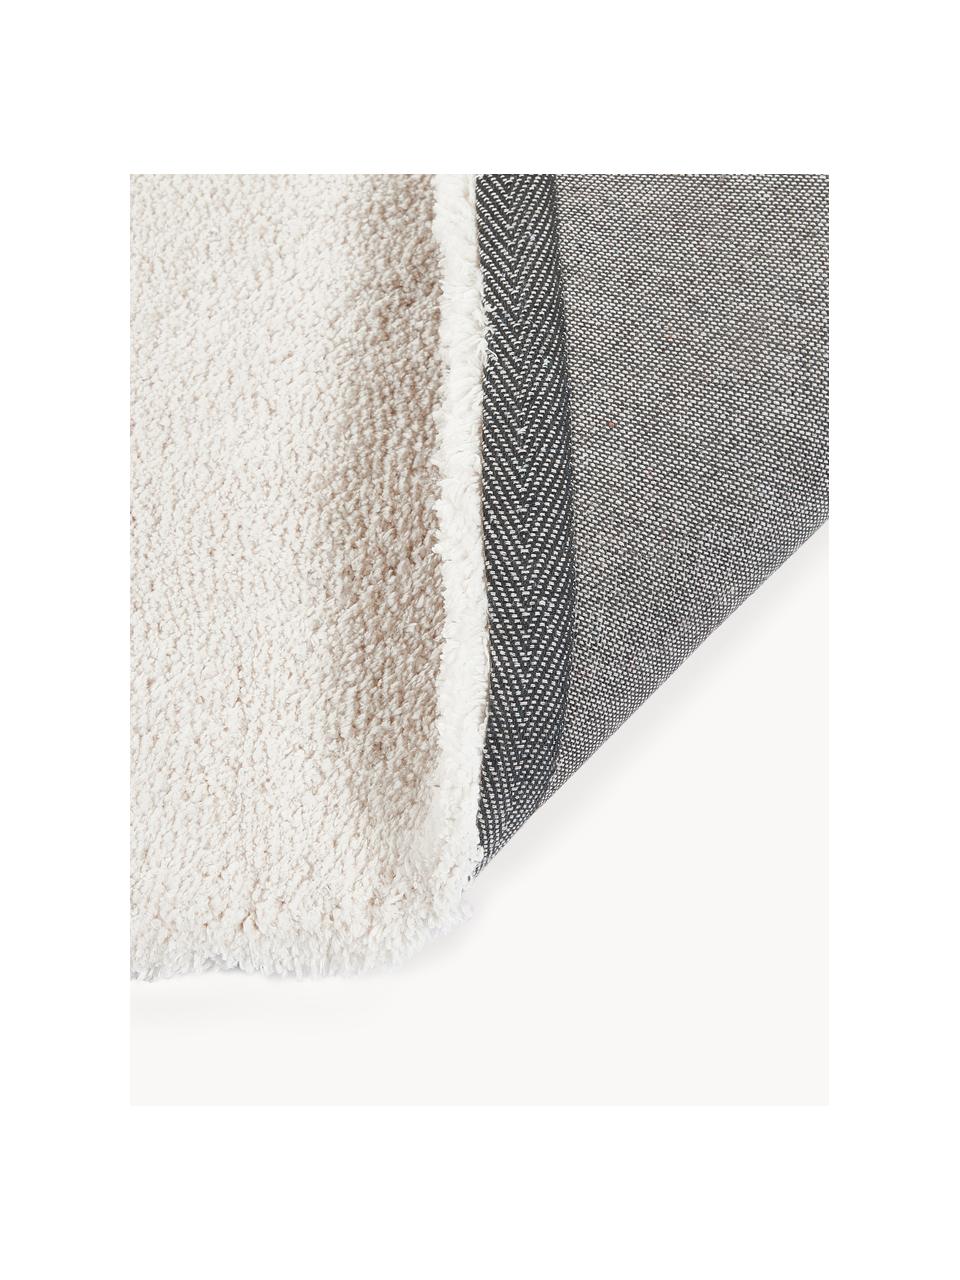 Puszysty dywan z długim włosiem Leighton, Złamana biel, S 120 x D 180 cm (Rozmiar S)